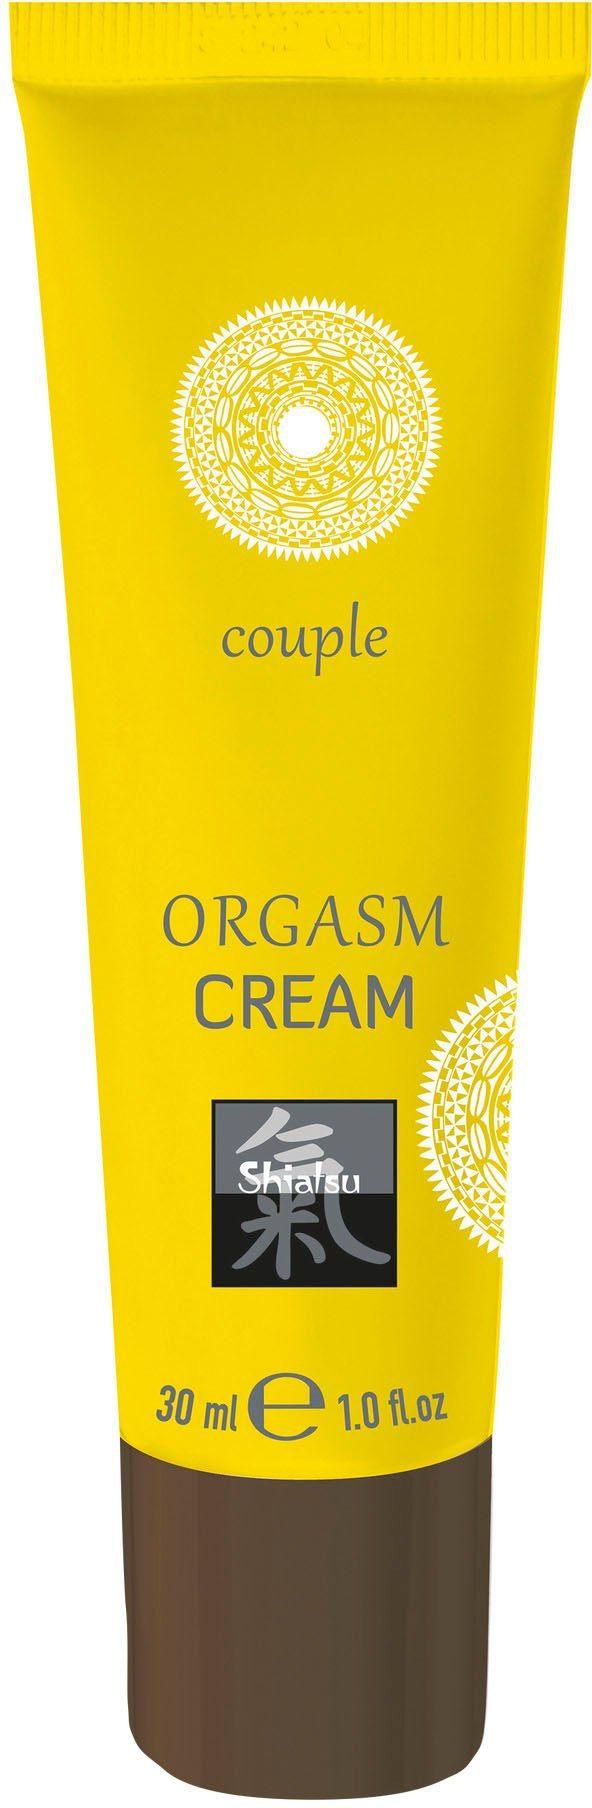 Orgasm Intimcreme, Cream Shiatsu